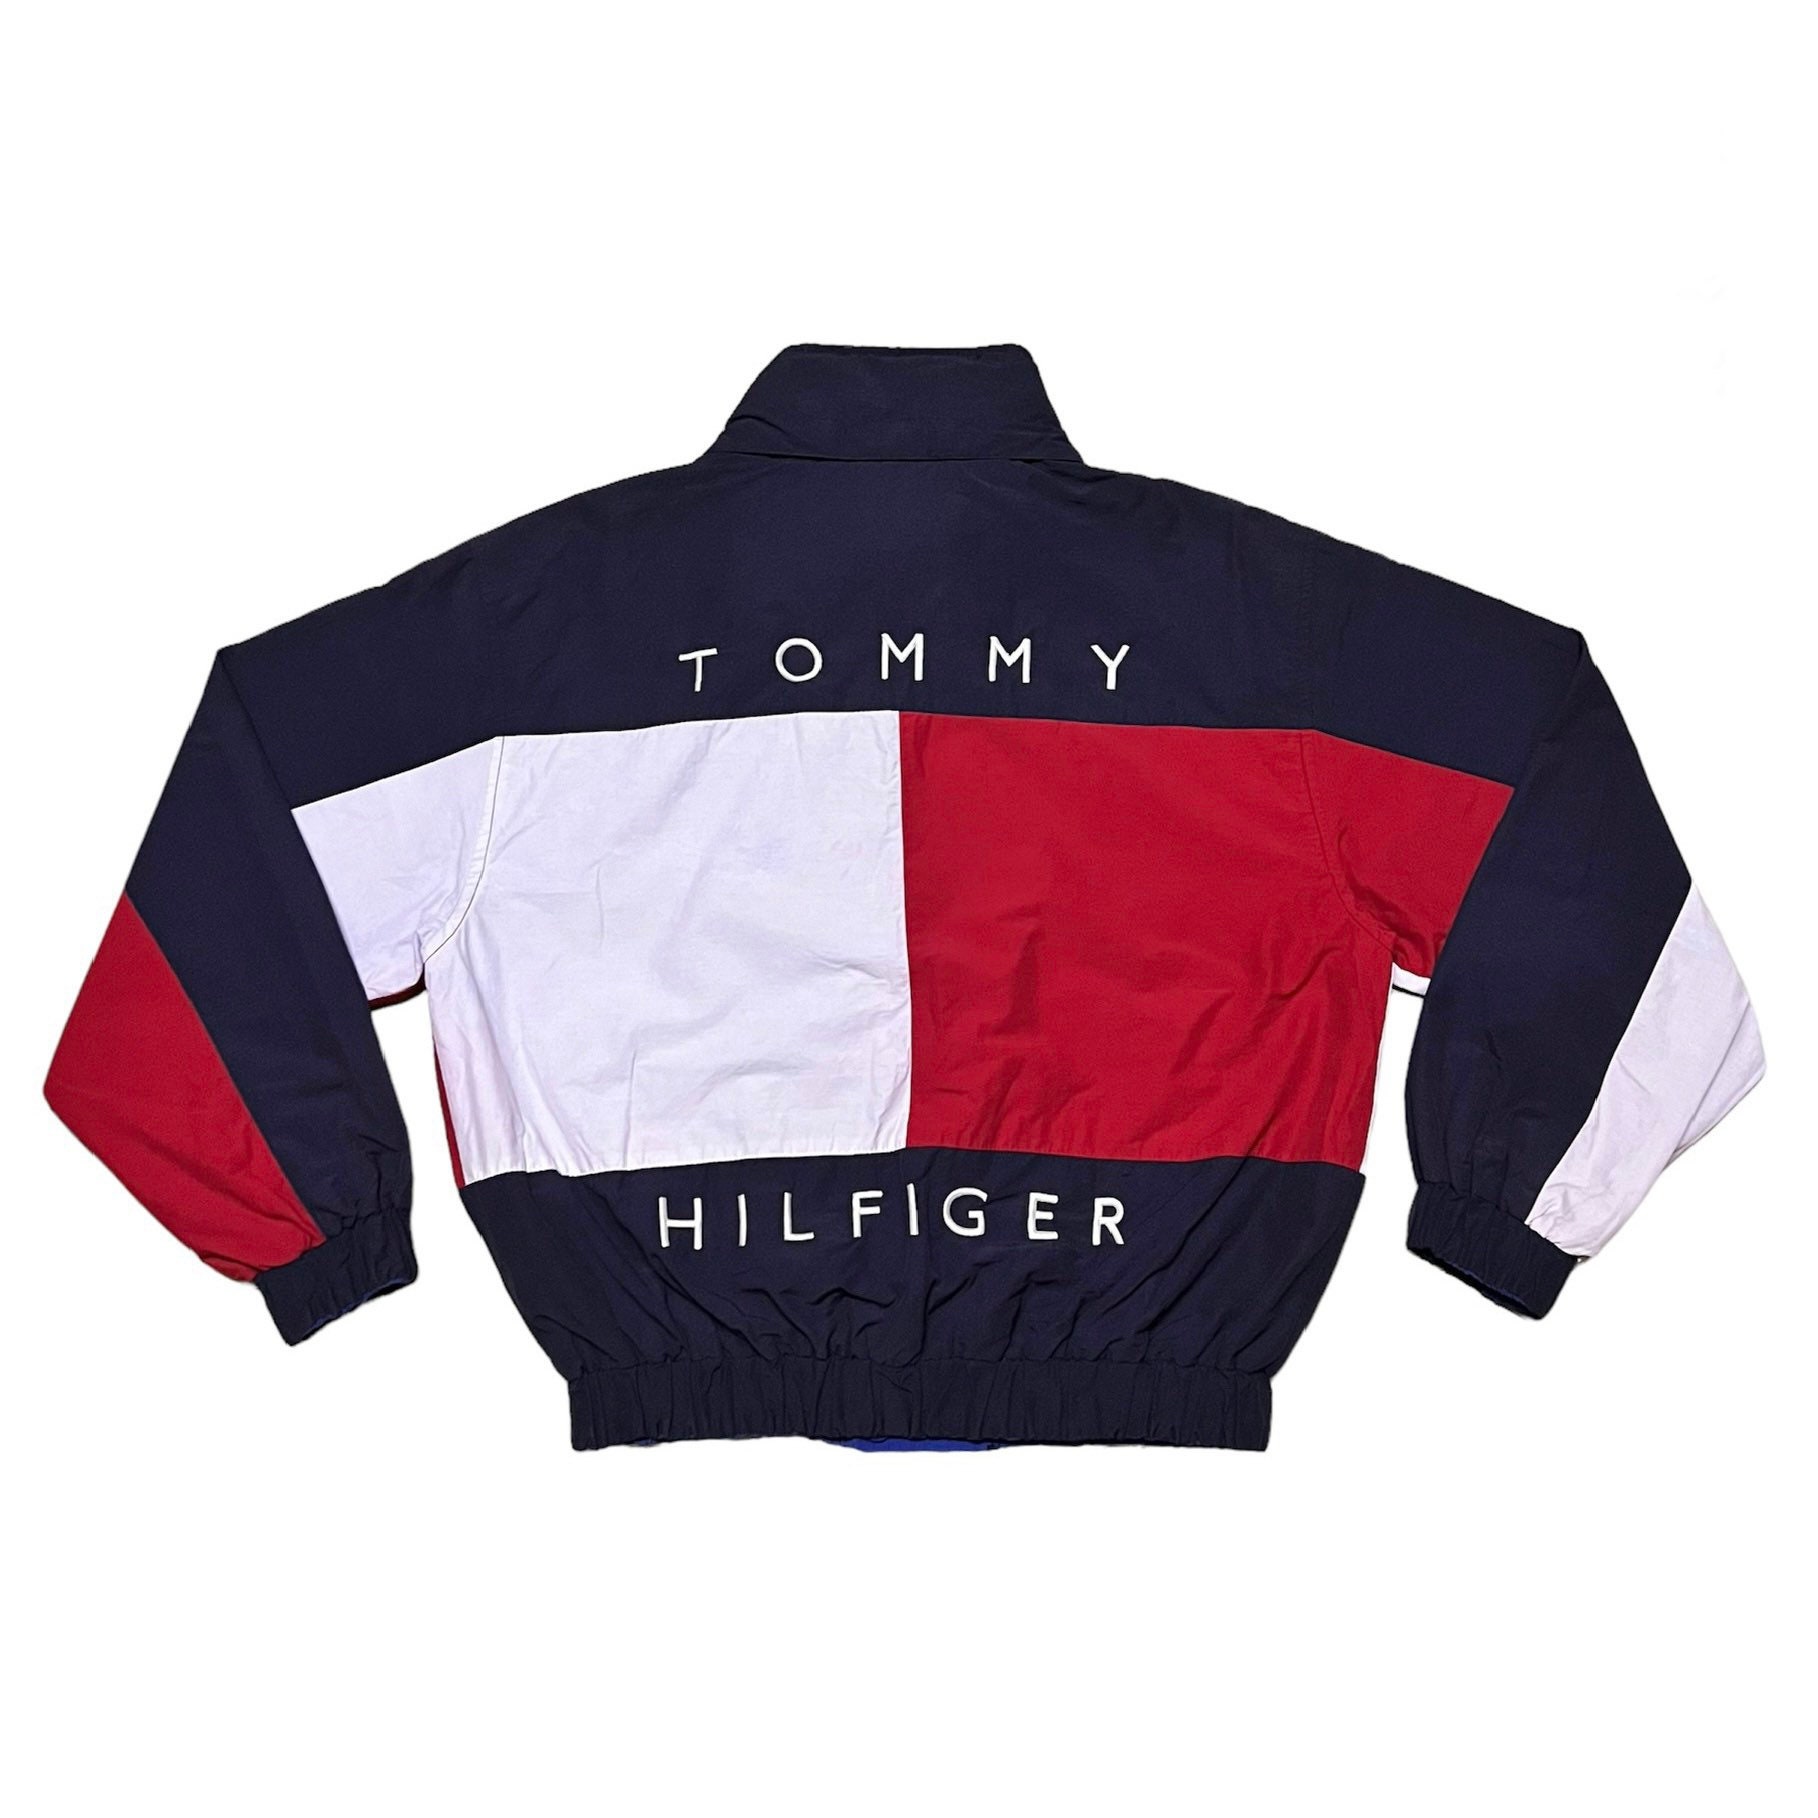 Kyst burst Sinewi Vintage 90s Tommy Hilfiger Big Logo Reversible Jacket - Etsy